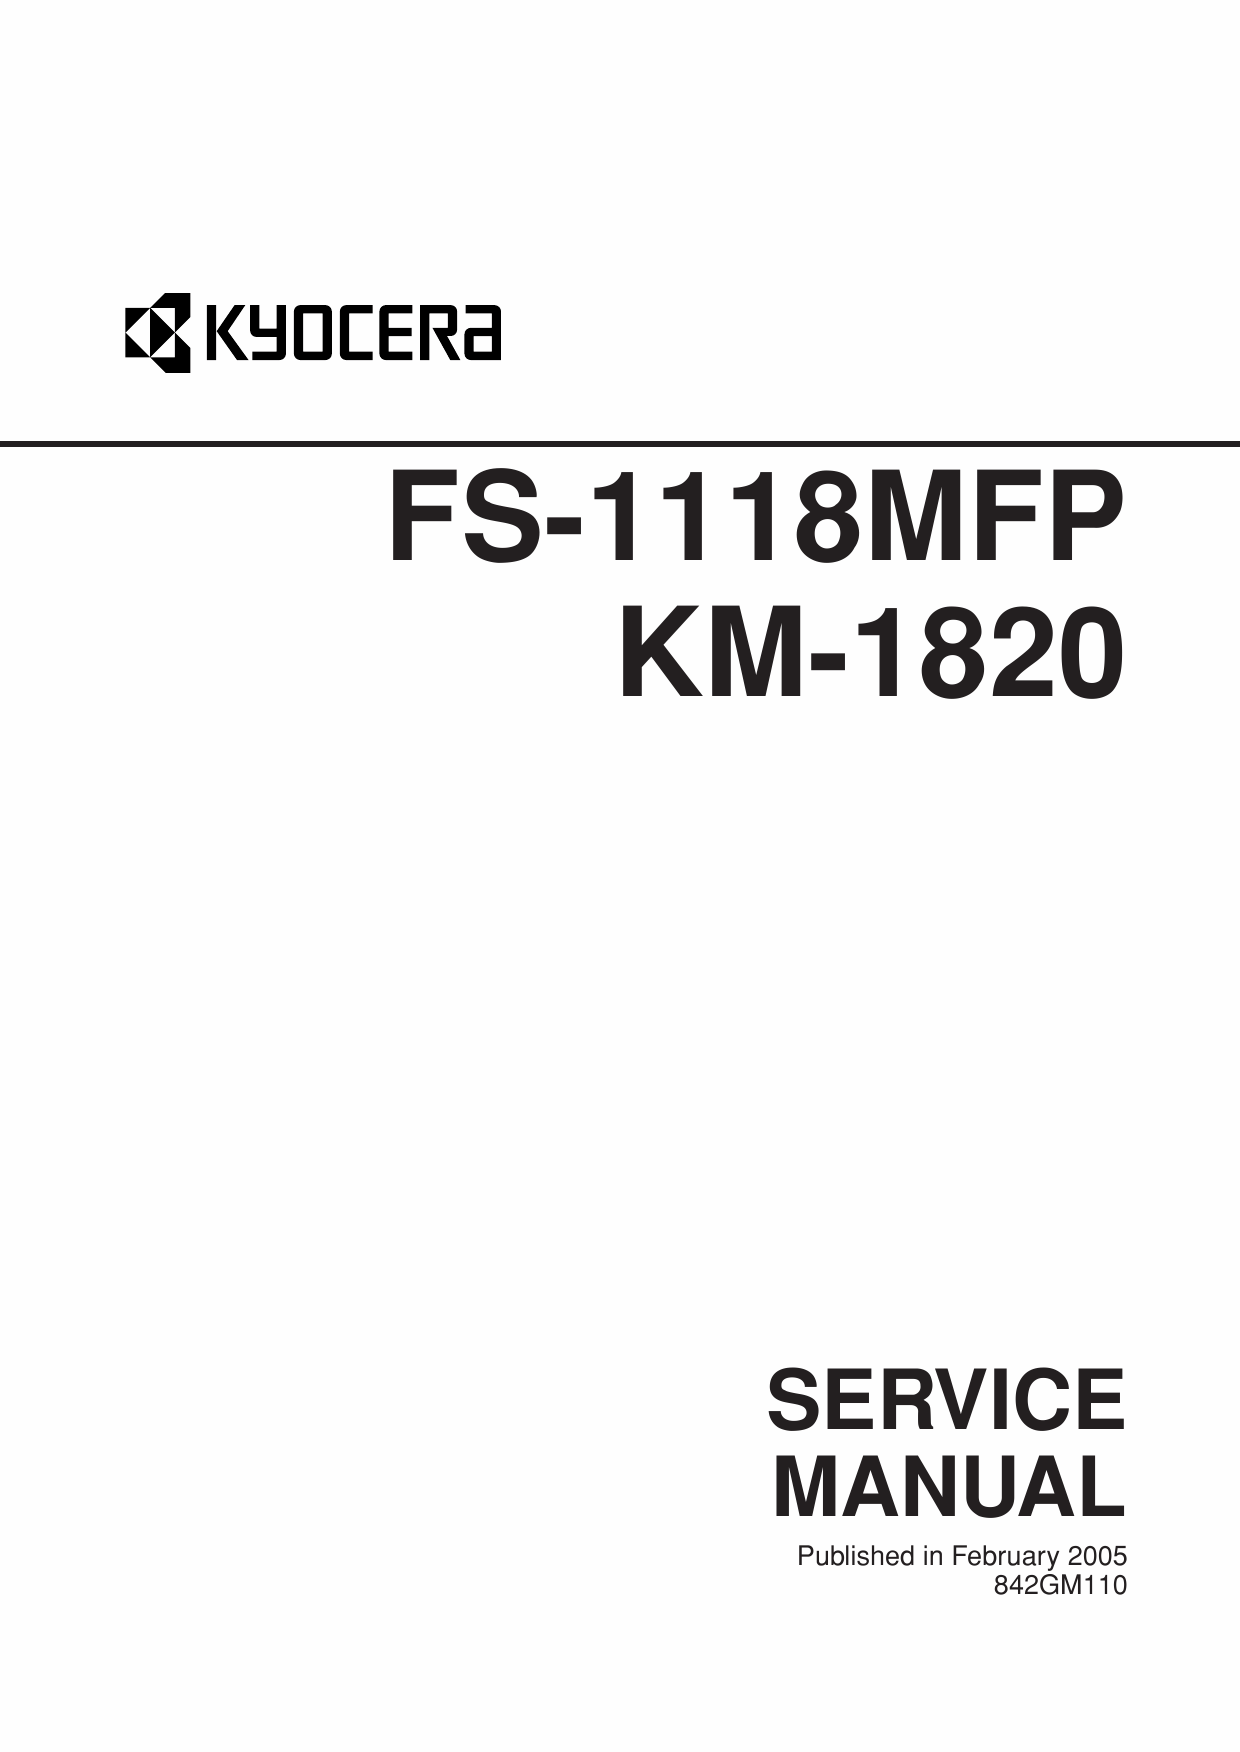 KYOCERA MFP FS-1118MFP KM-1820 Service Manual-1